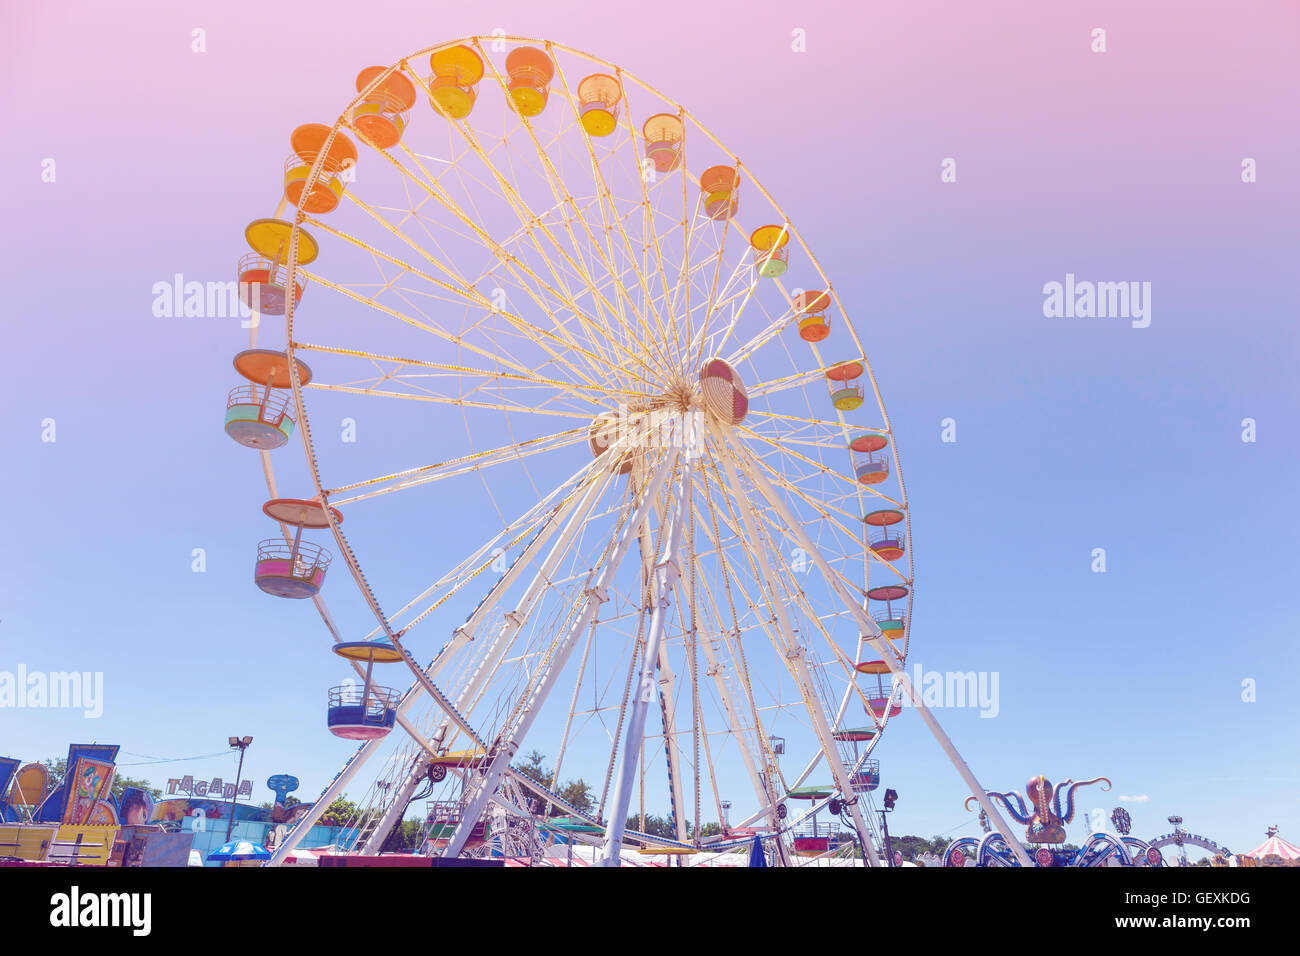 Riesenrad im Vergnügungspark mit blauem Himmel Hintergrund Pastell Farbton Stockfoto